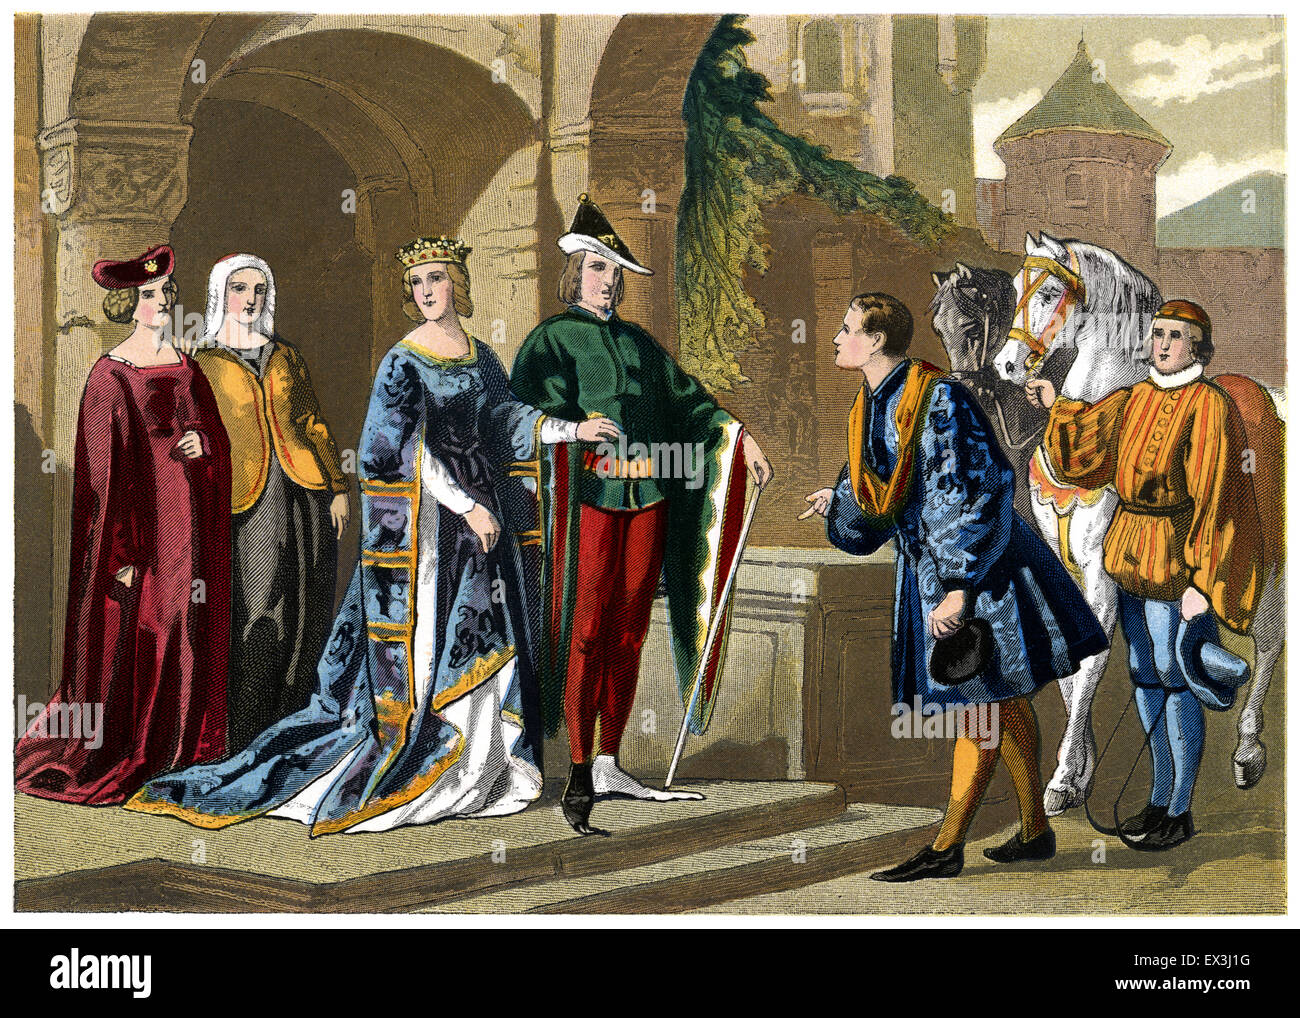 Costumes du xive siècle - illustration couleur d'époque victorienne Banque D'Images